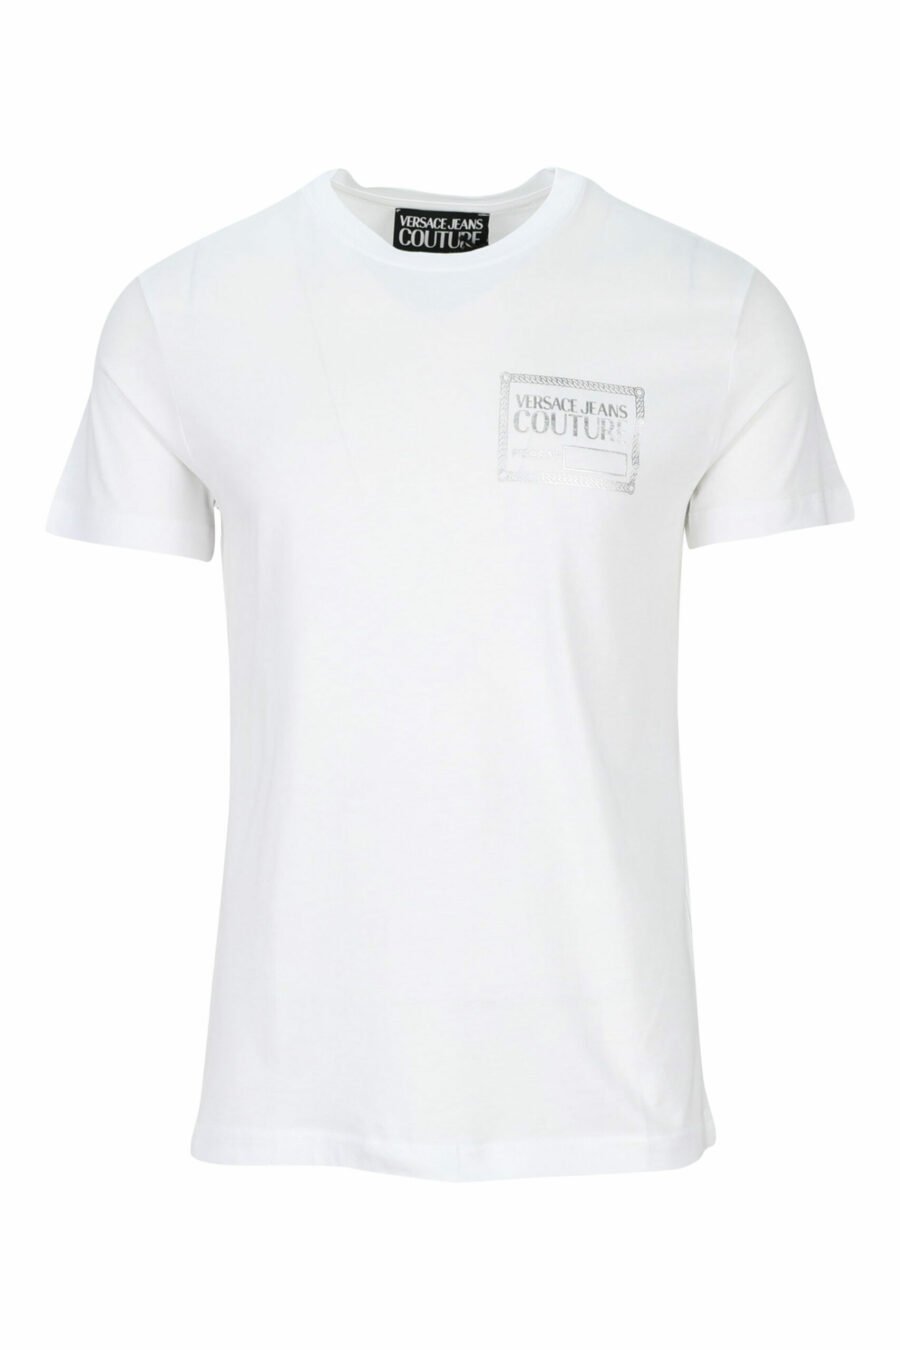 Weißes T-Shirt mit silbernem "Stückzahl"-Minilogo - 8052019456936 skaliert